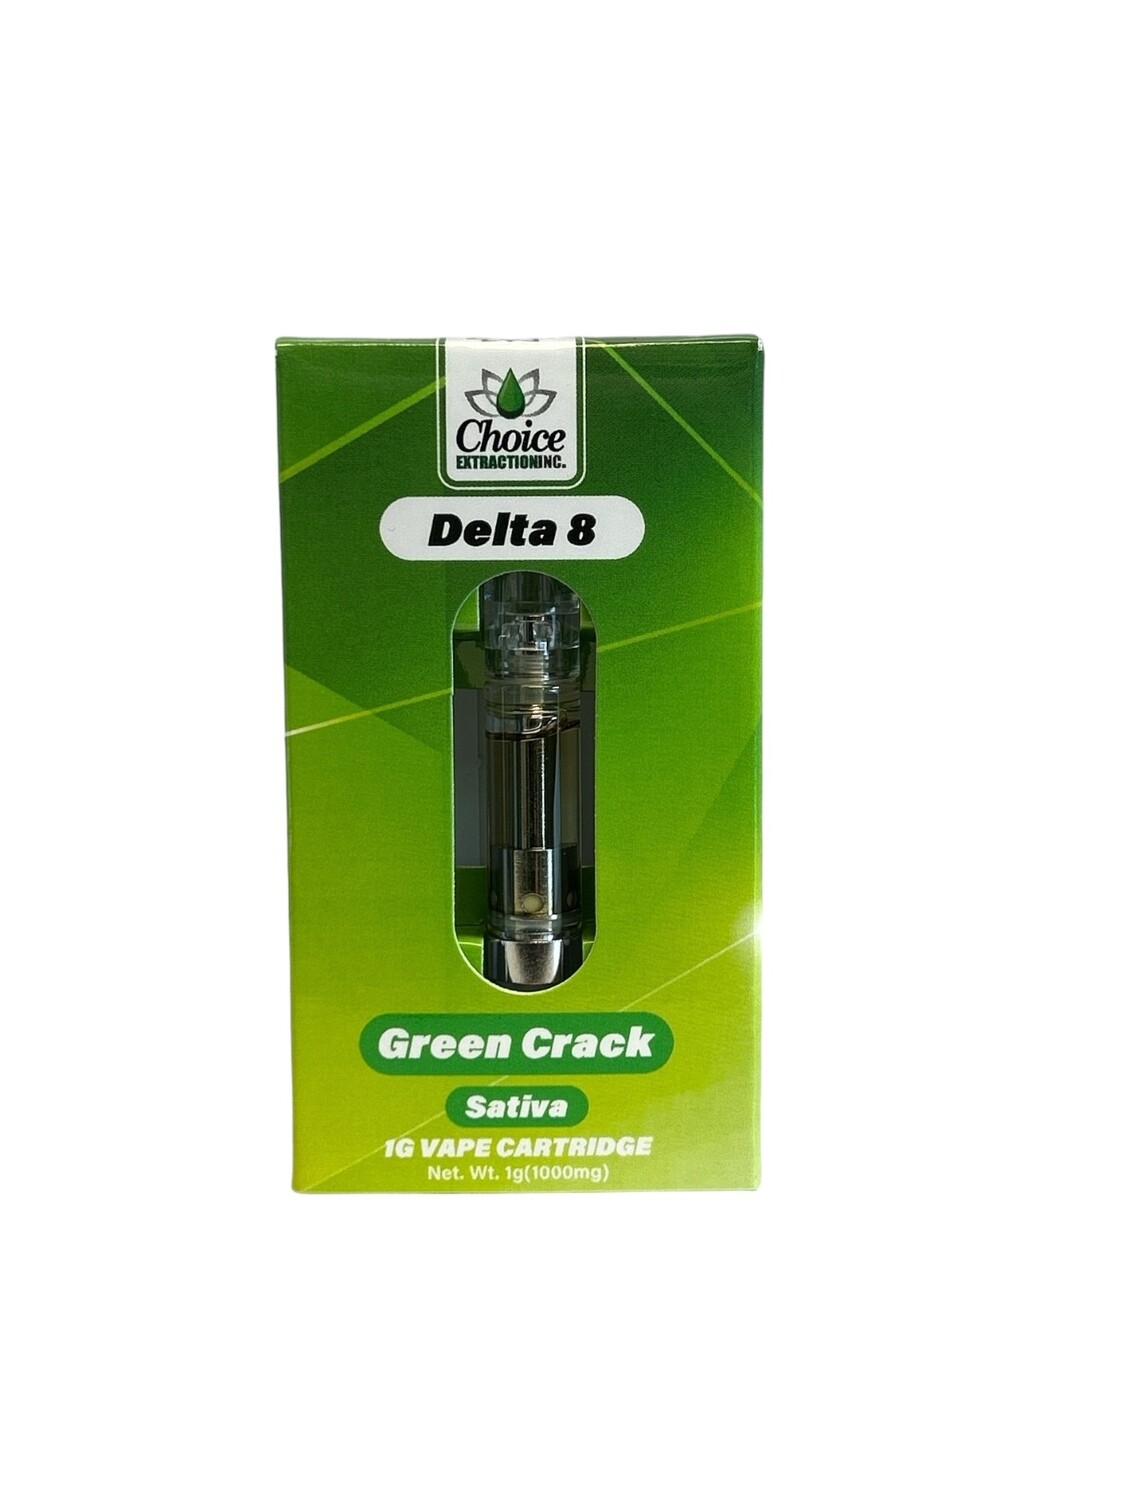 D8 Vape Cart - Green Crack 1mL - Sativa